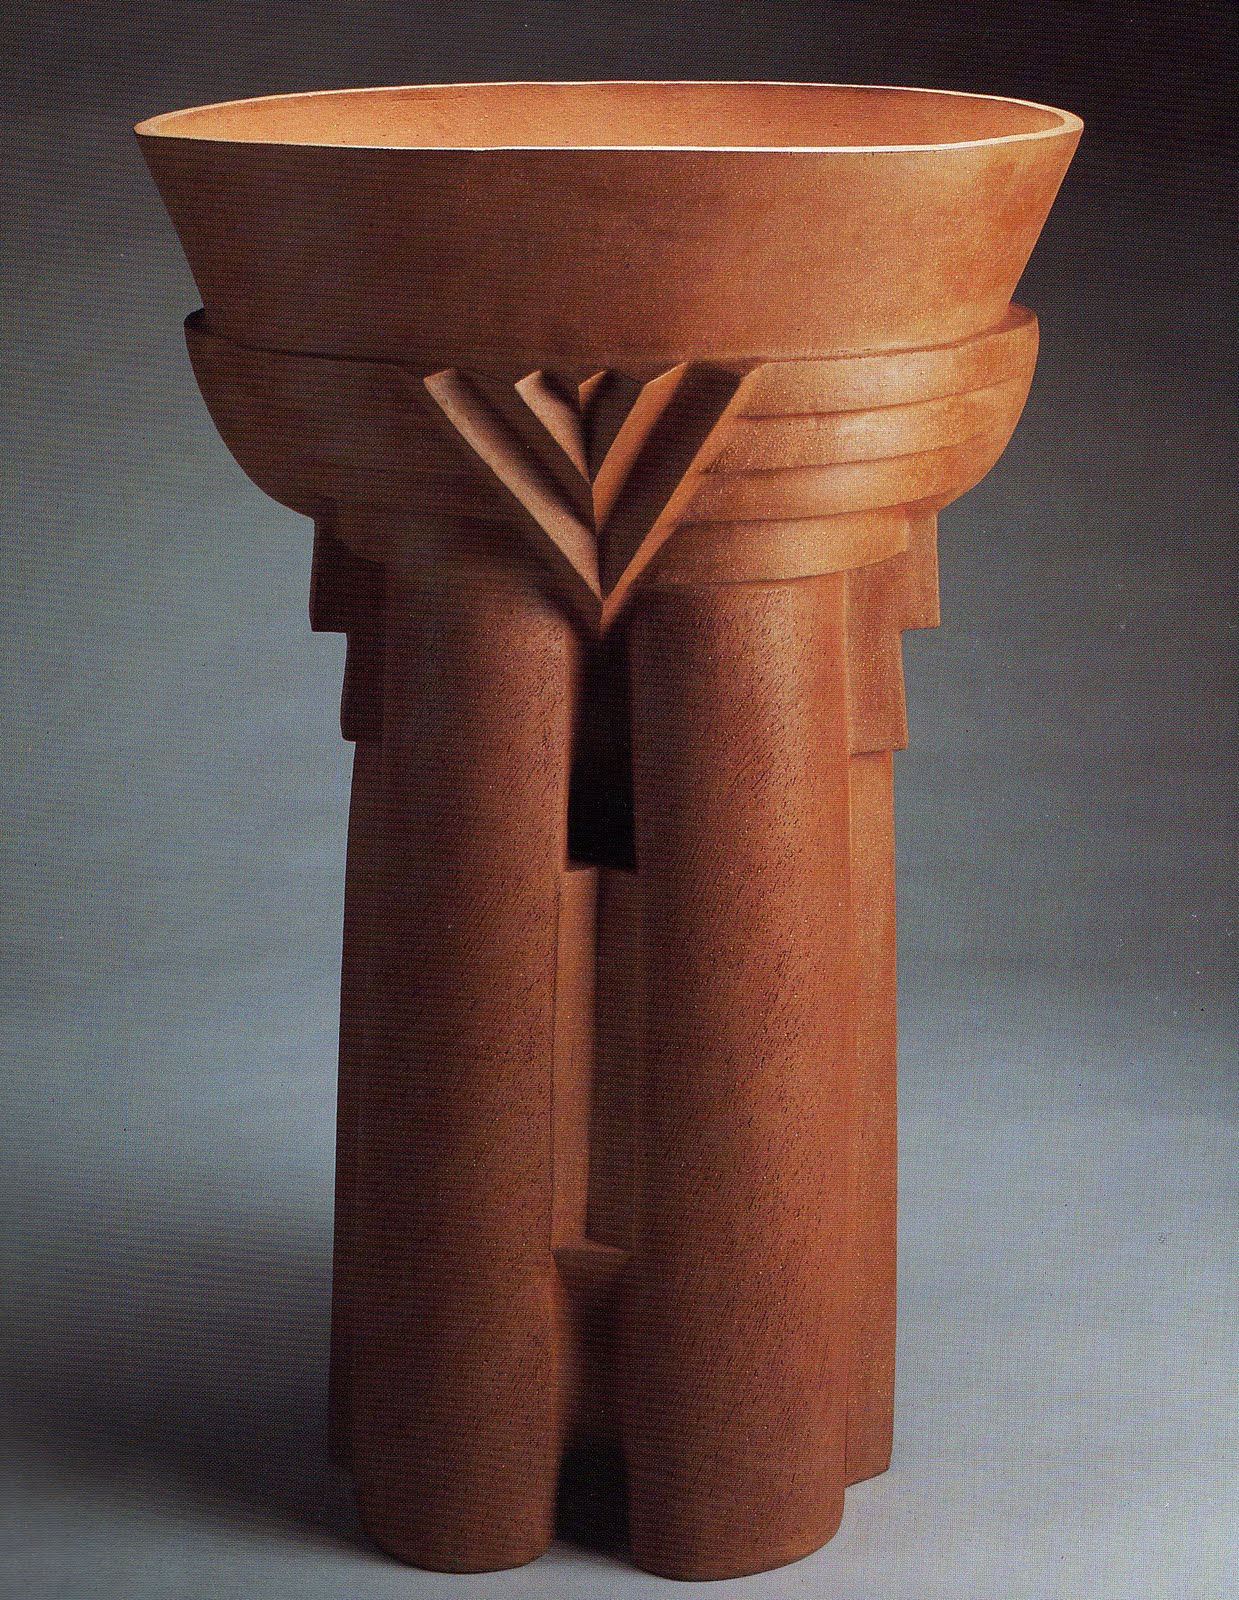 unglazed ceramic vessel by William Daley